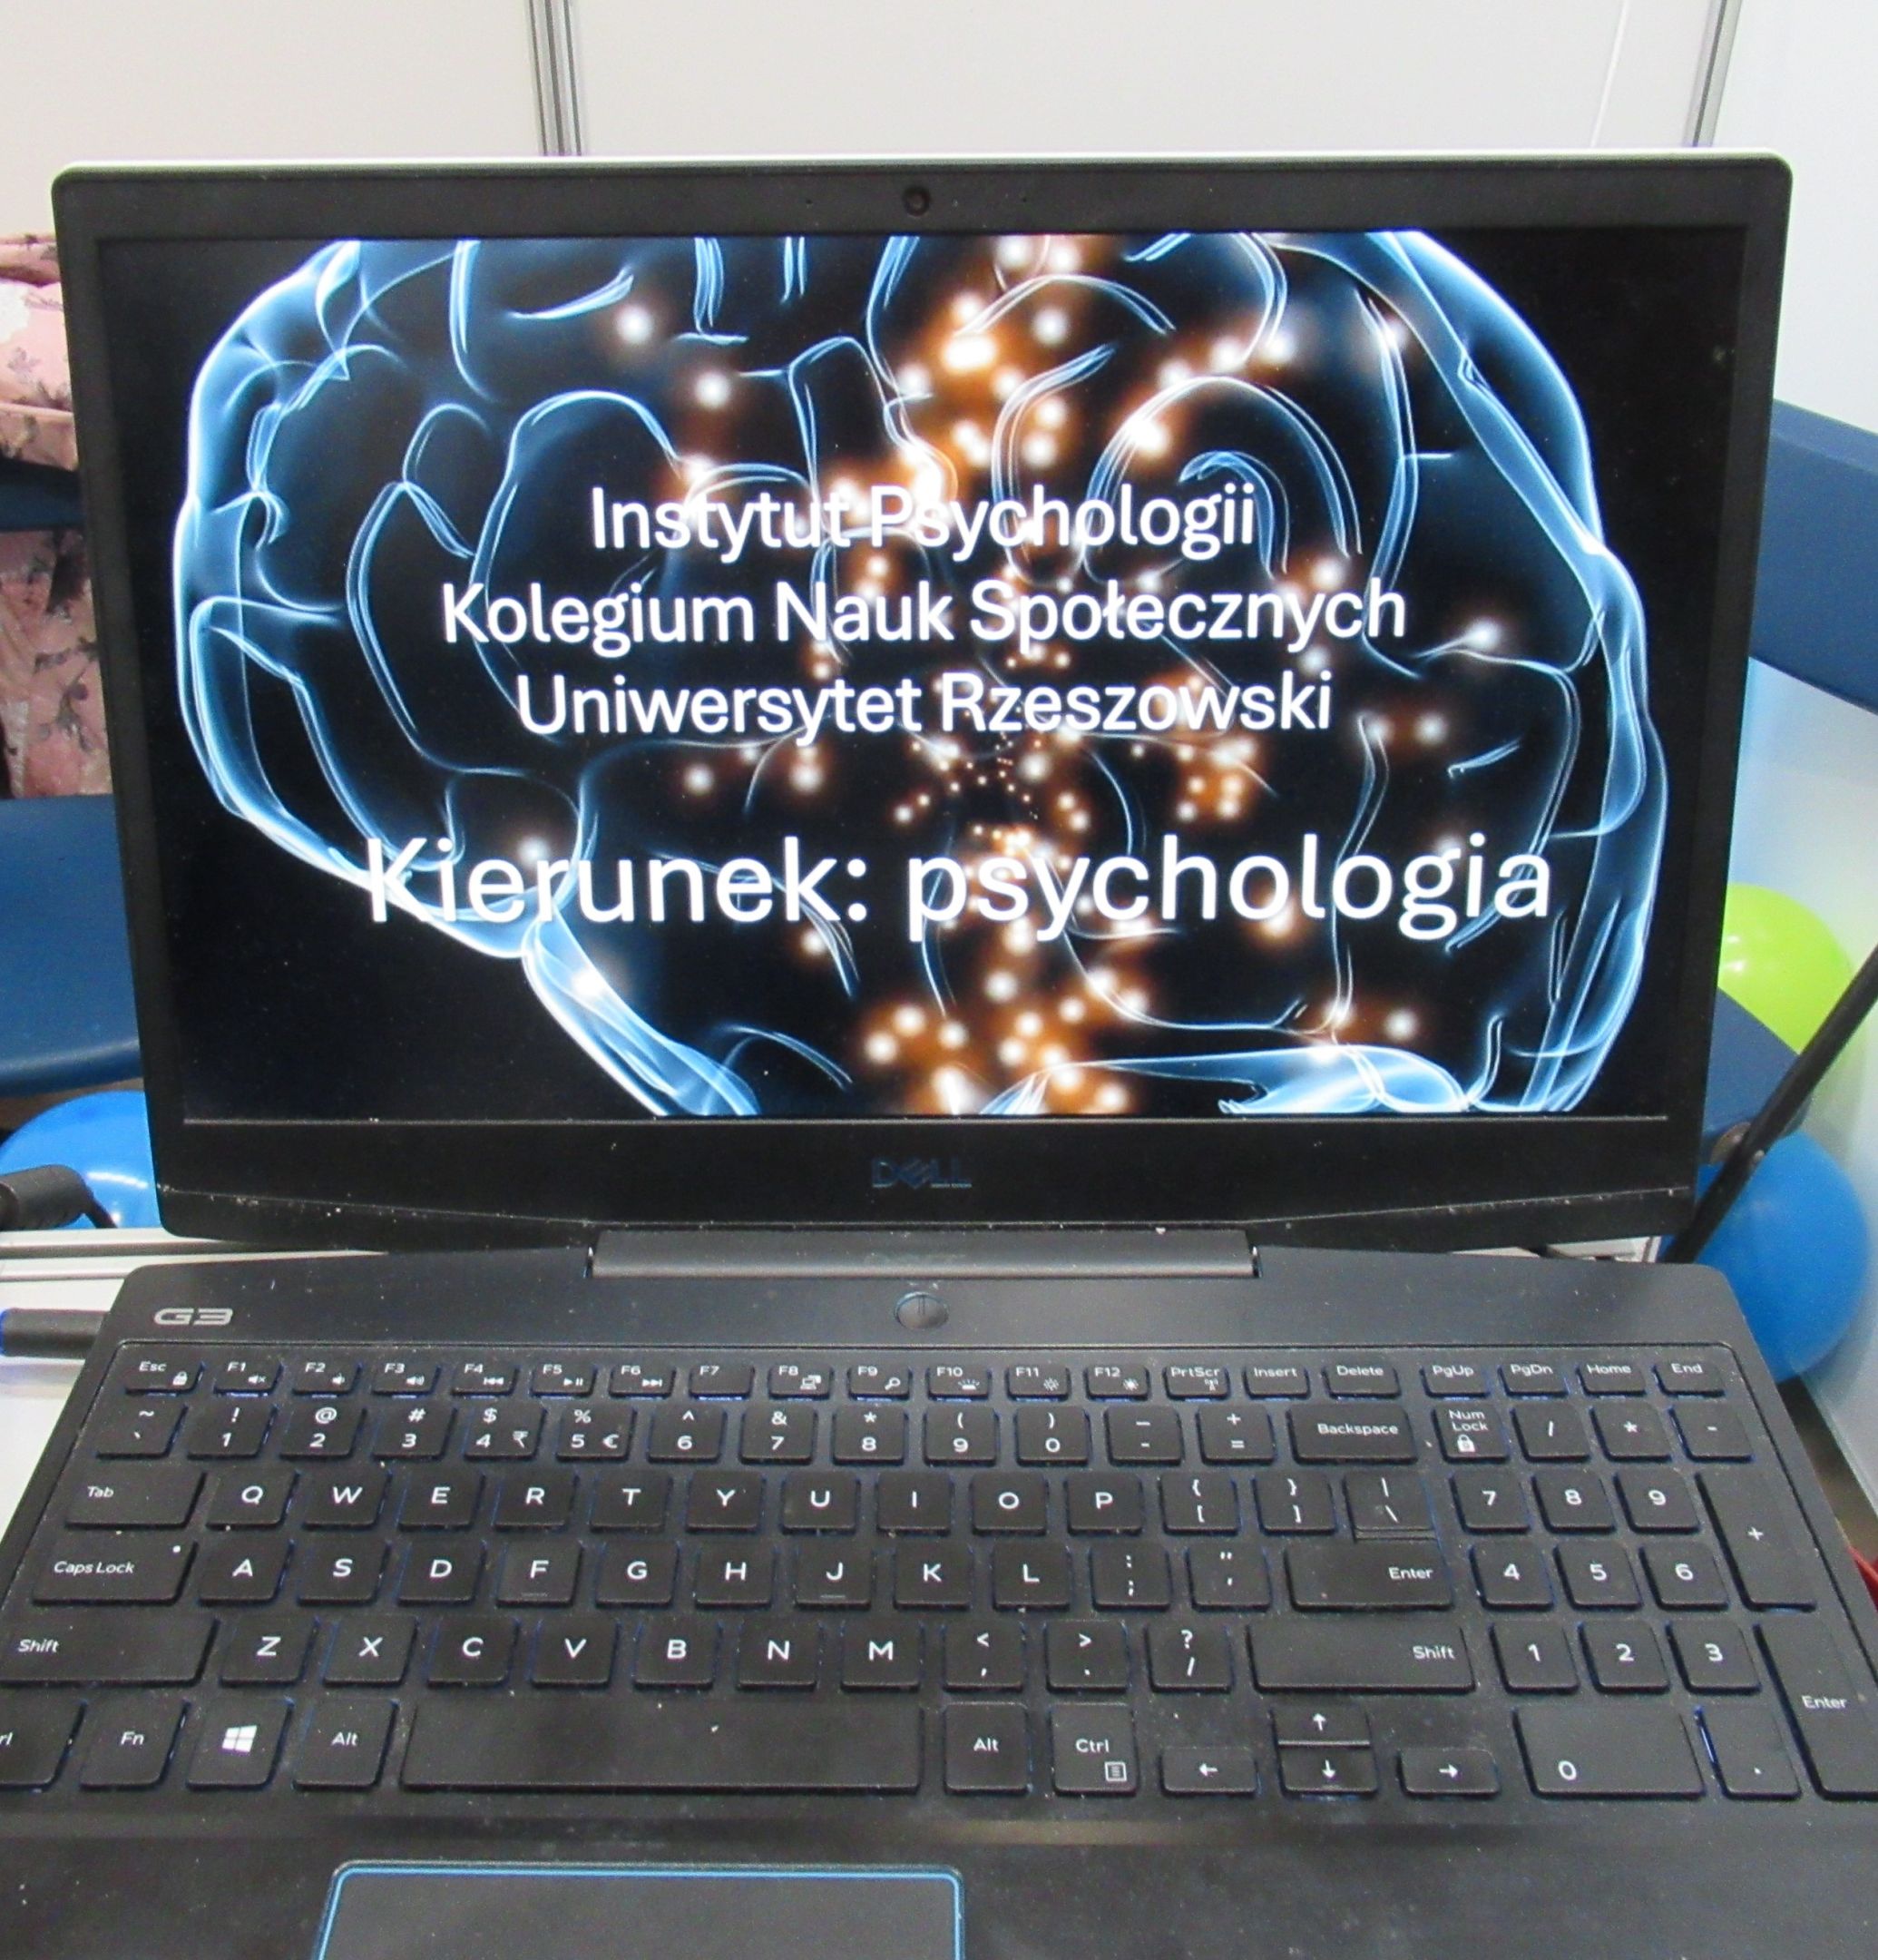 Prezentacja multimedialna o Instytucie Psychologii i kierunku studiów psychologia.